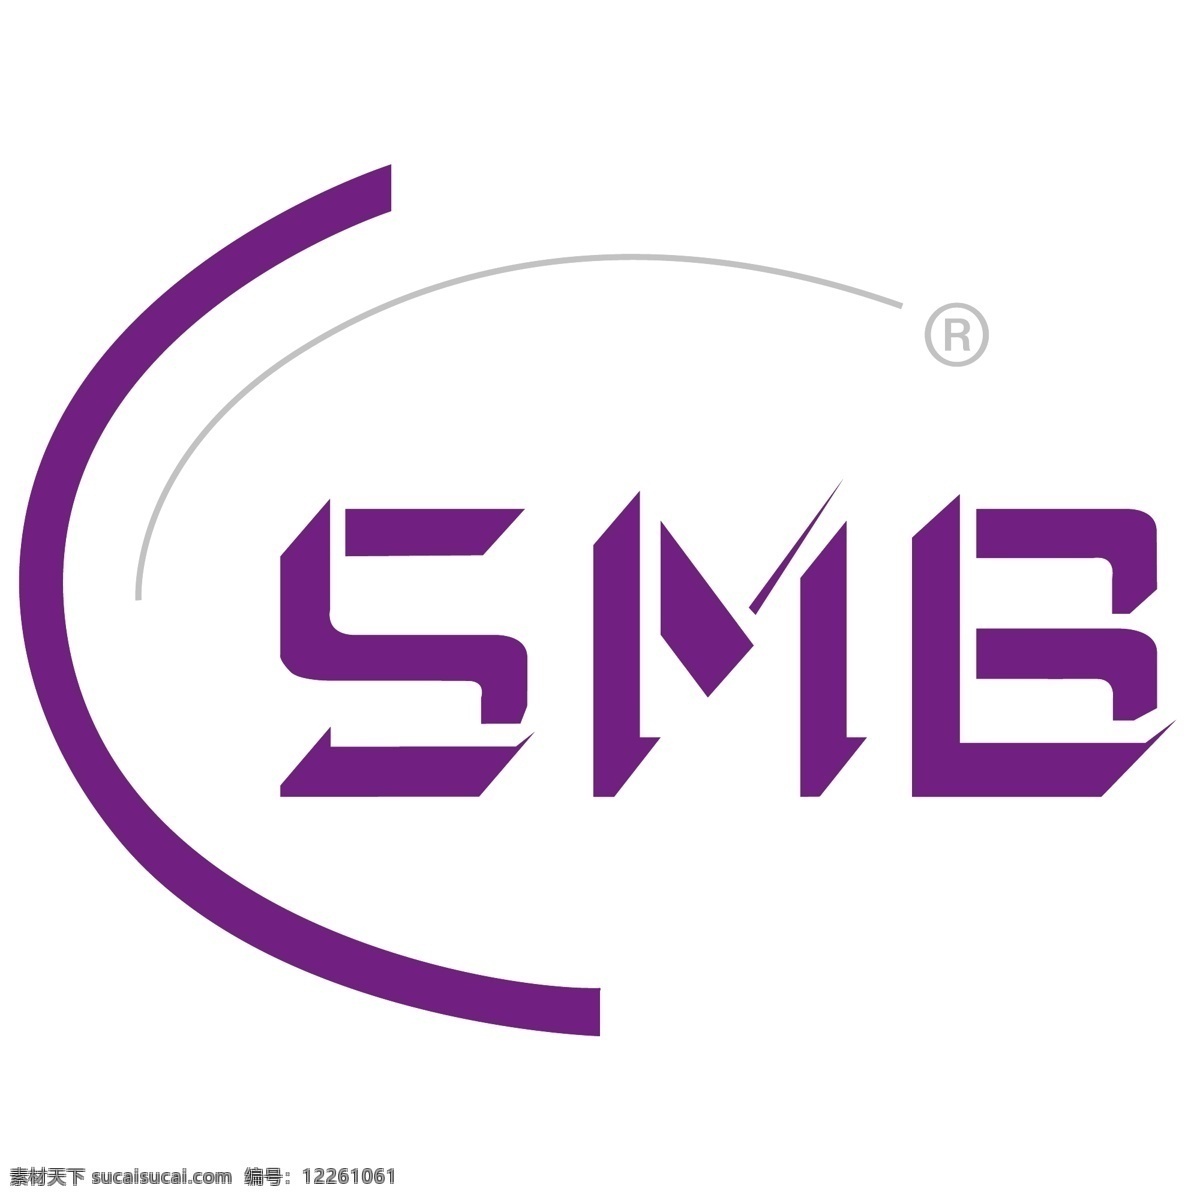 smb 矢量标志下载 免费矢量标识 商标 品牌标识 标识 矢量 免费 品牌 公司 白色